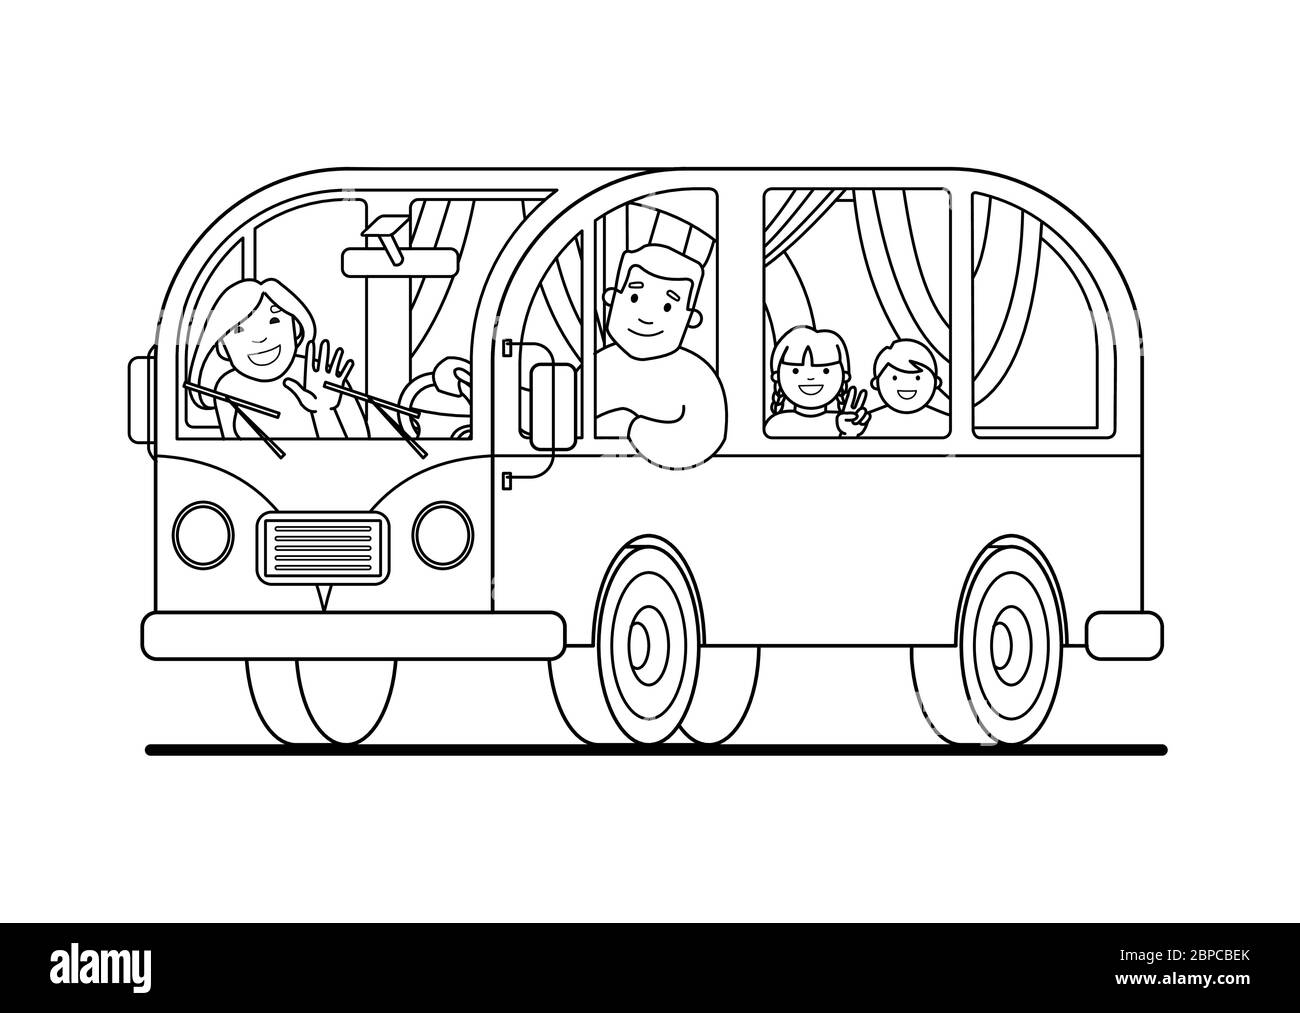 Eine Familienreise im Kleinbus; Vater fährt, Mutter, Kinder; Camping. Glücklich Cartoon Menschen Kinder in einem Retro-Minivan. Roadtrip, Sommerurlaub. Konti Stock Vektor